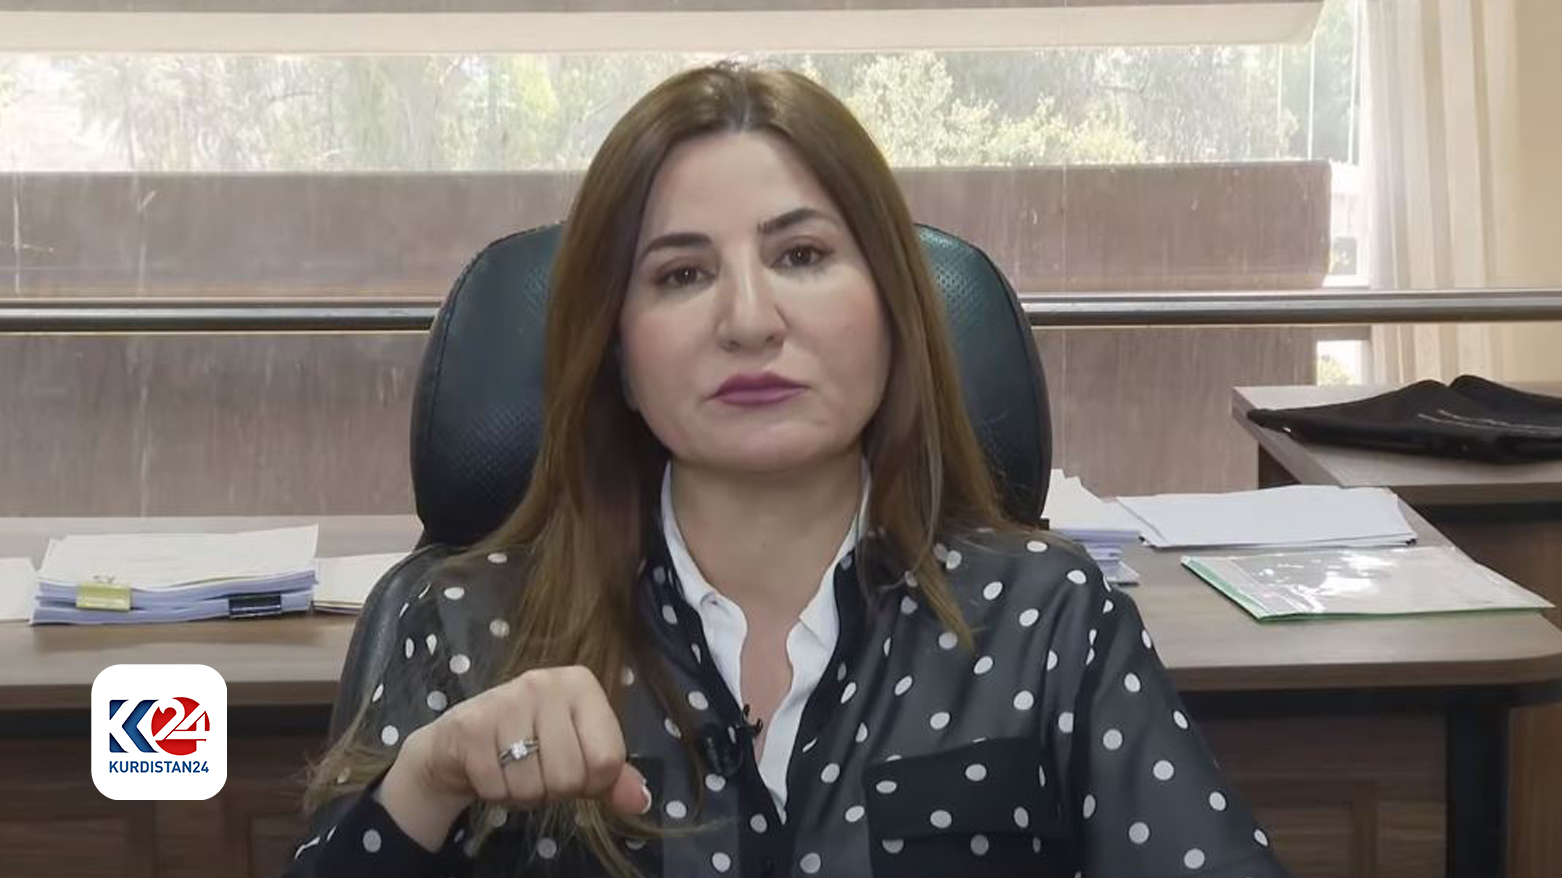 ویان دخیل، سخنگوی فراکیون پارت دموکرات کوردستان در مجلس نمایندگان عراق